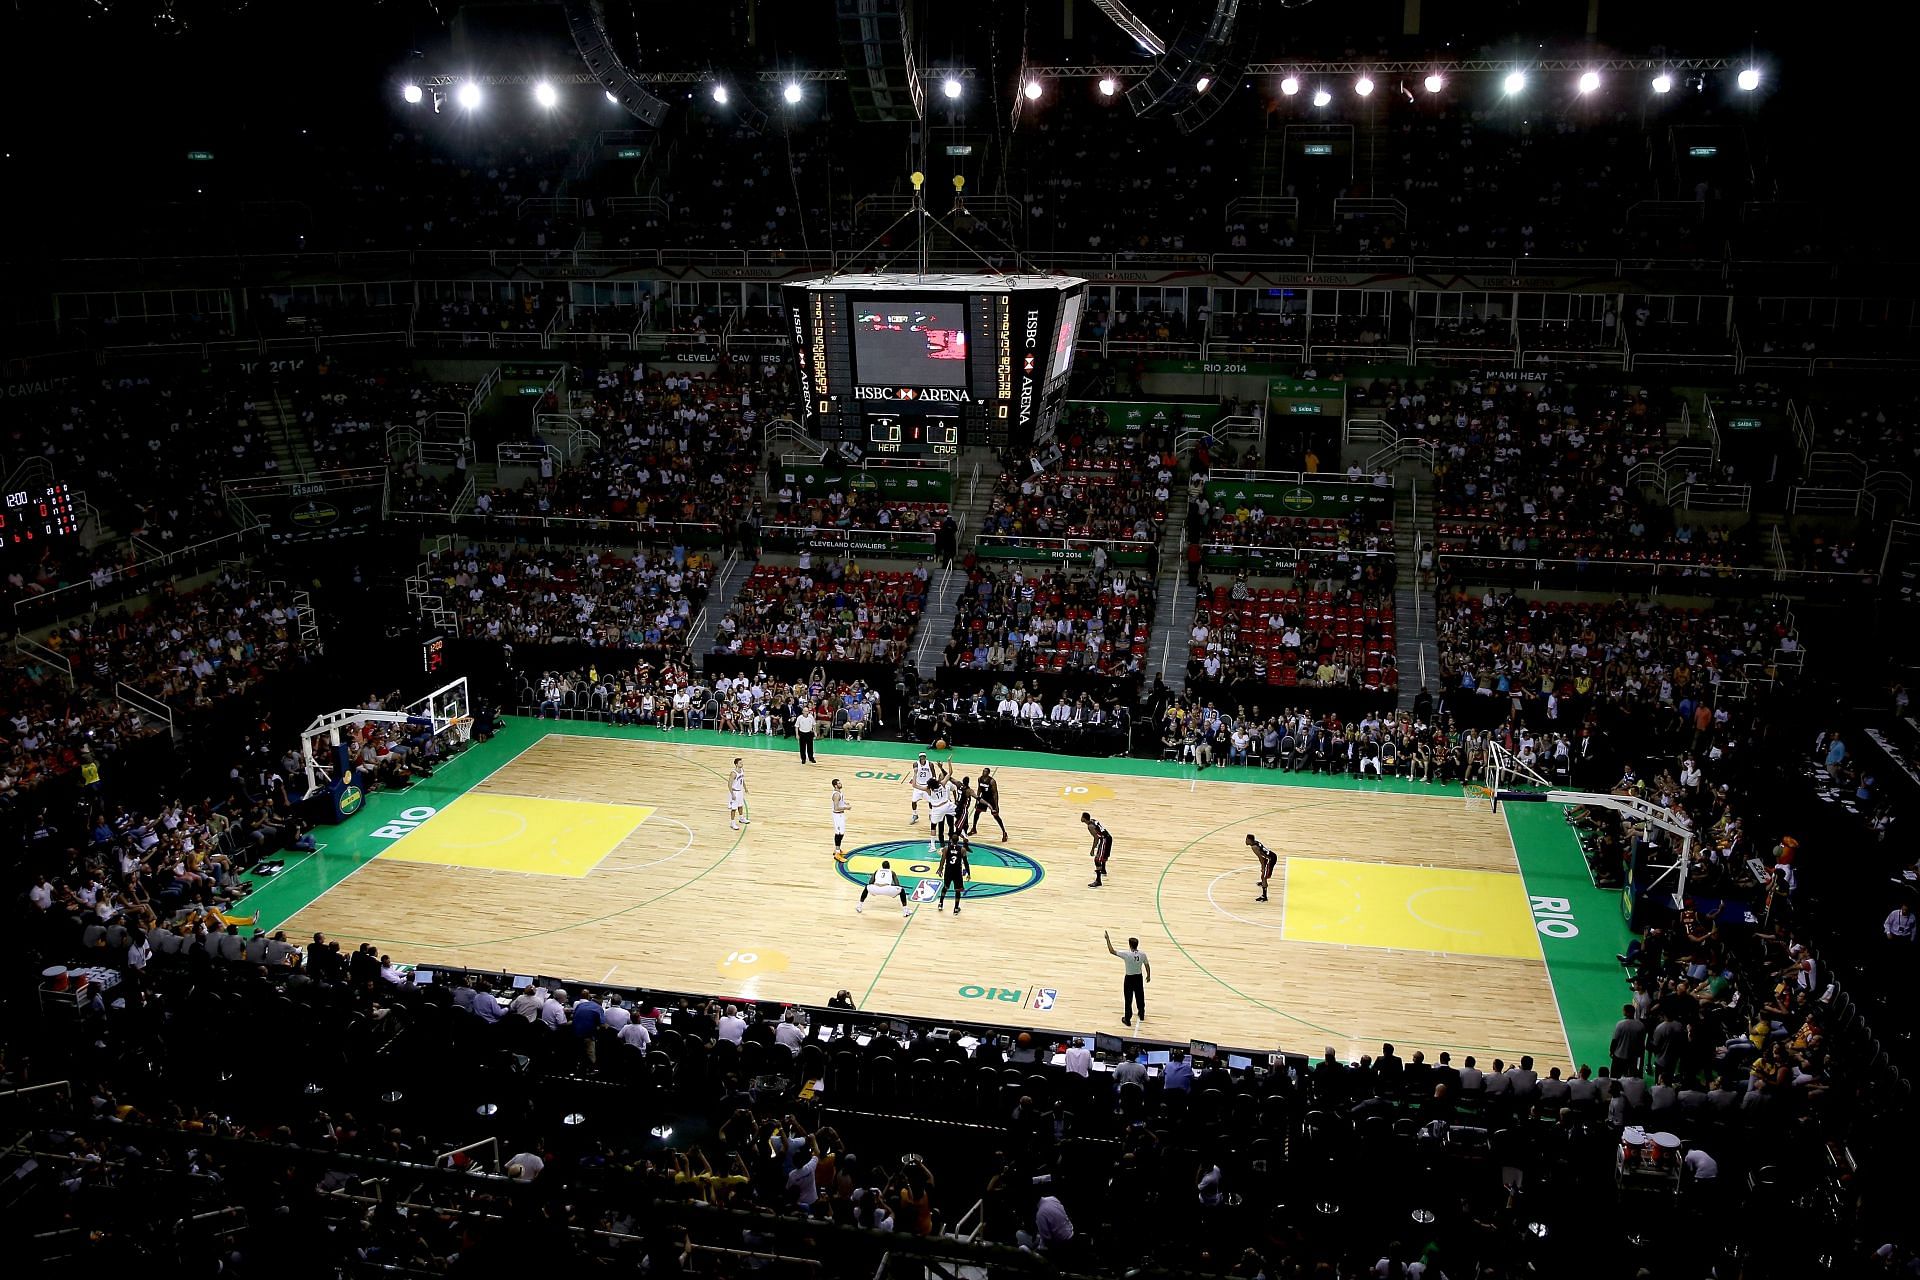 Jeunesse Arena (formerly HSBC Arena) in Rio de Janeiro, Brazil